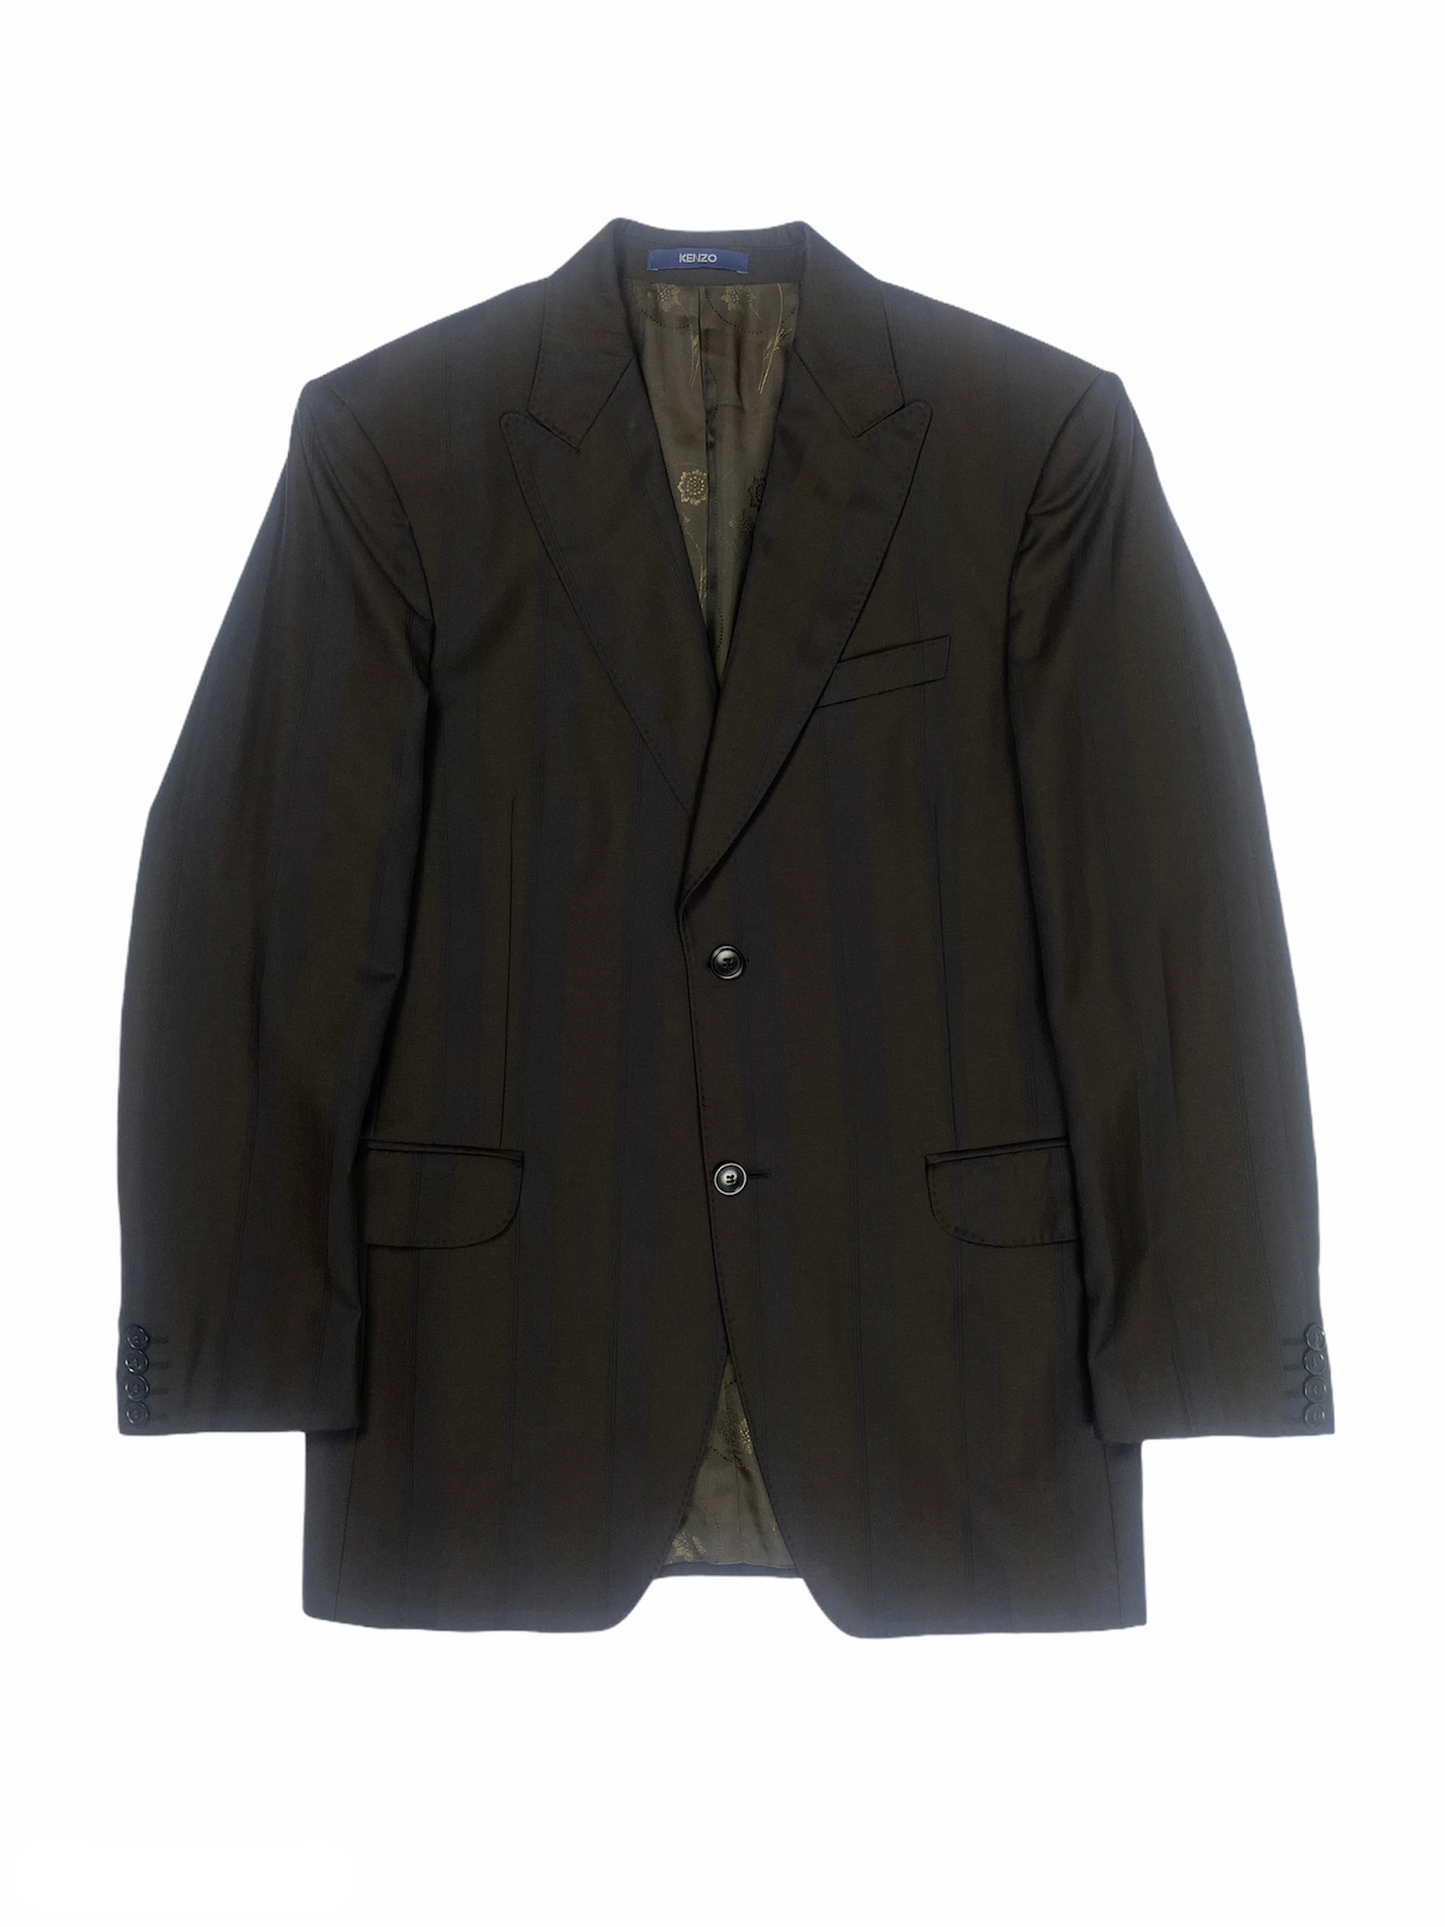 Veste de blazer KENZO marron rayée, taille 48.